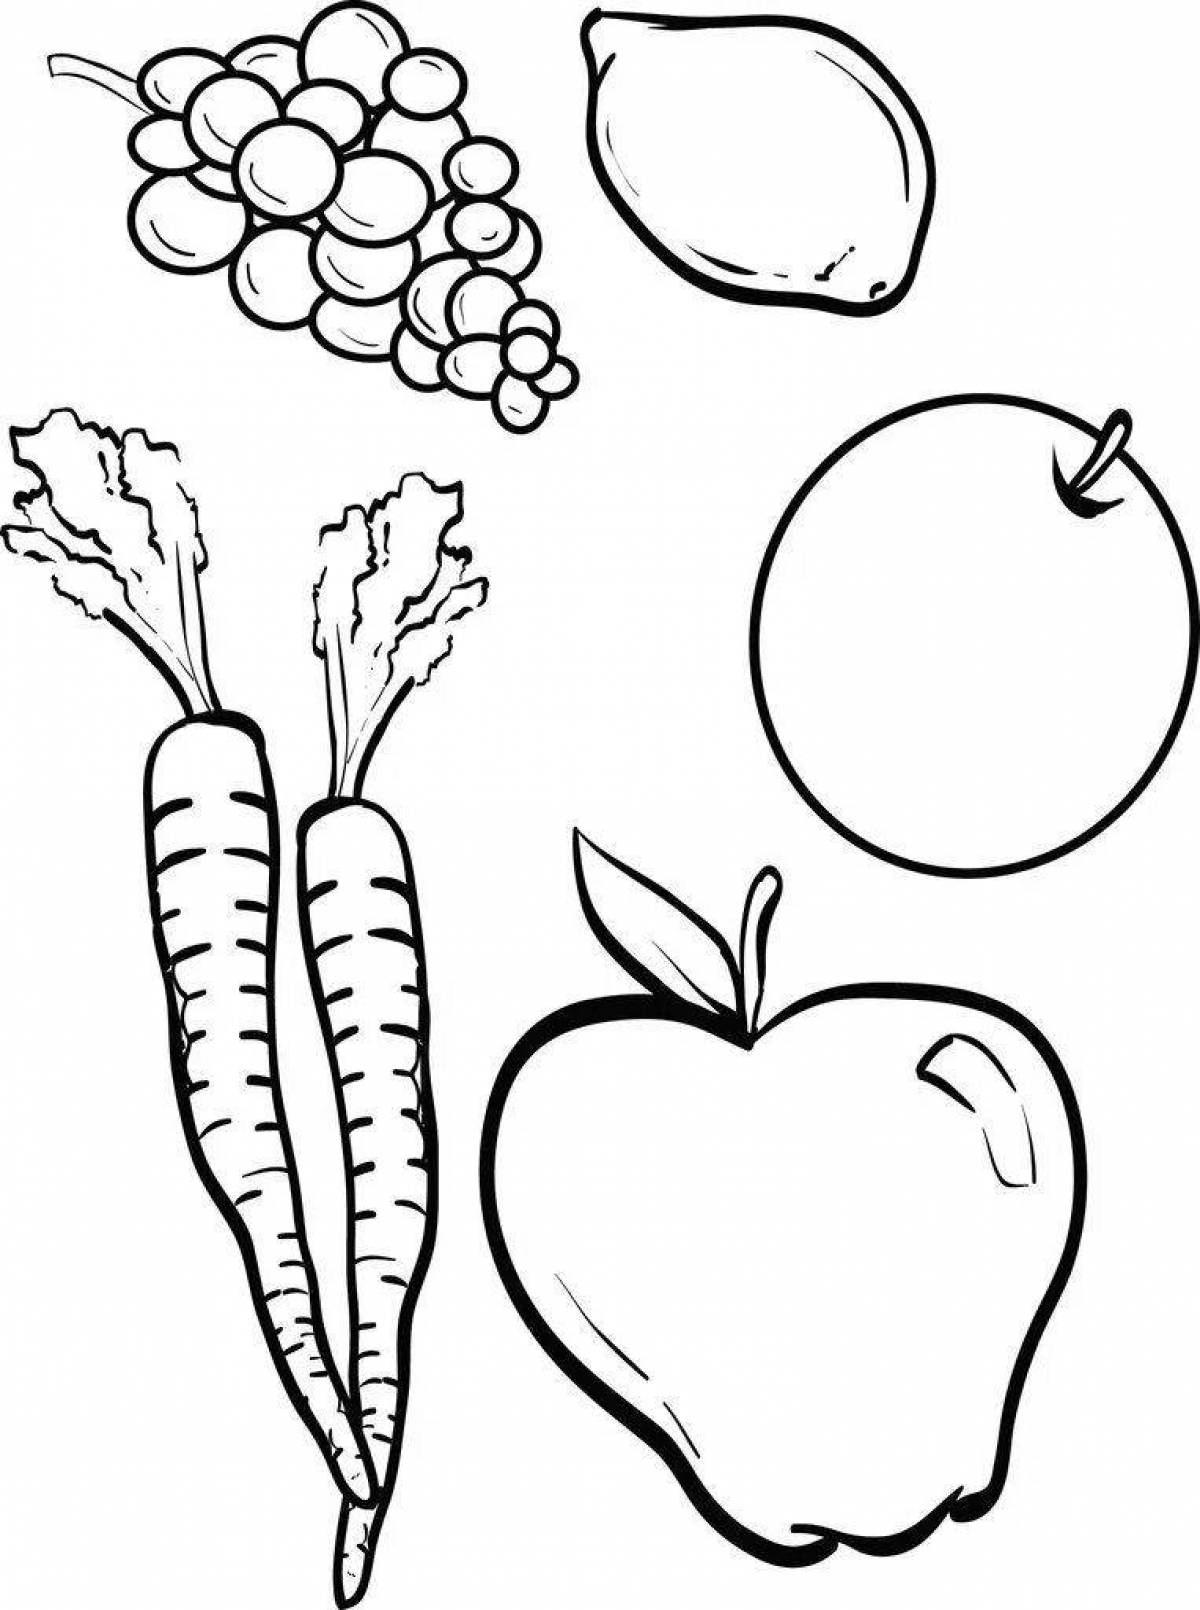 Радостная страница раскраски овощей и фруктов